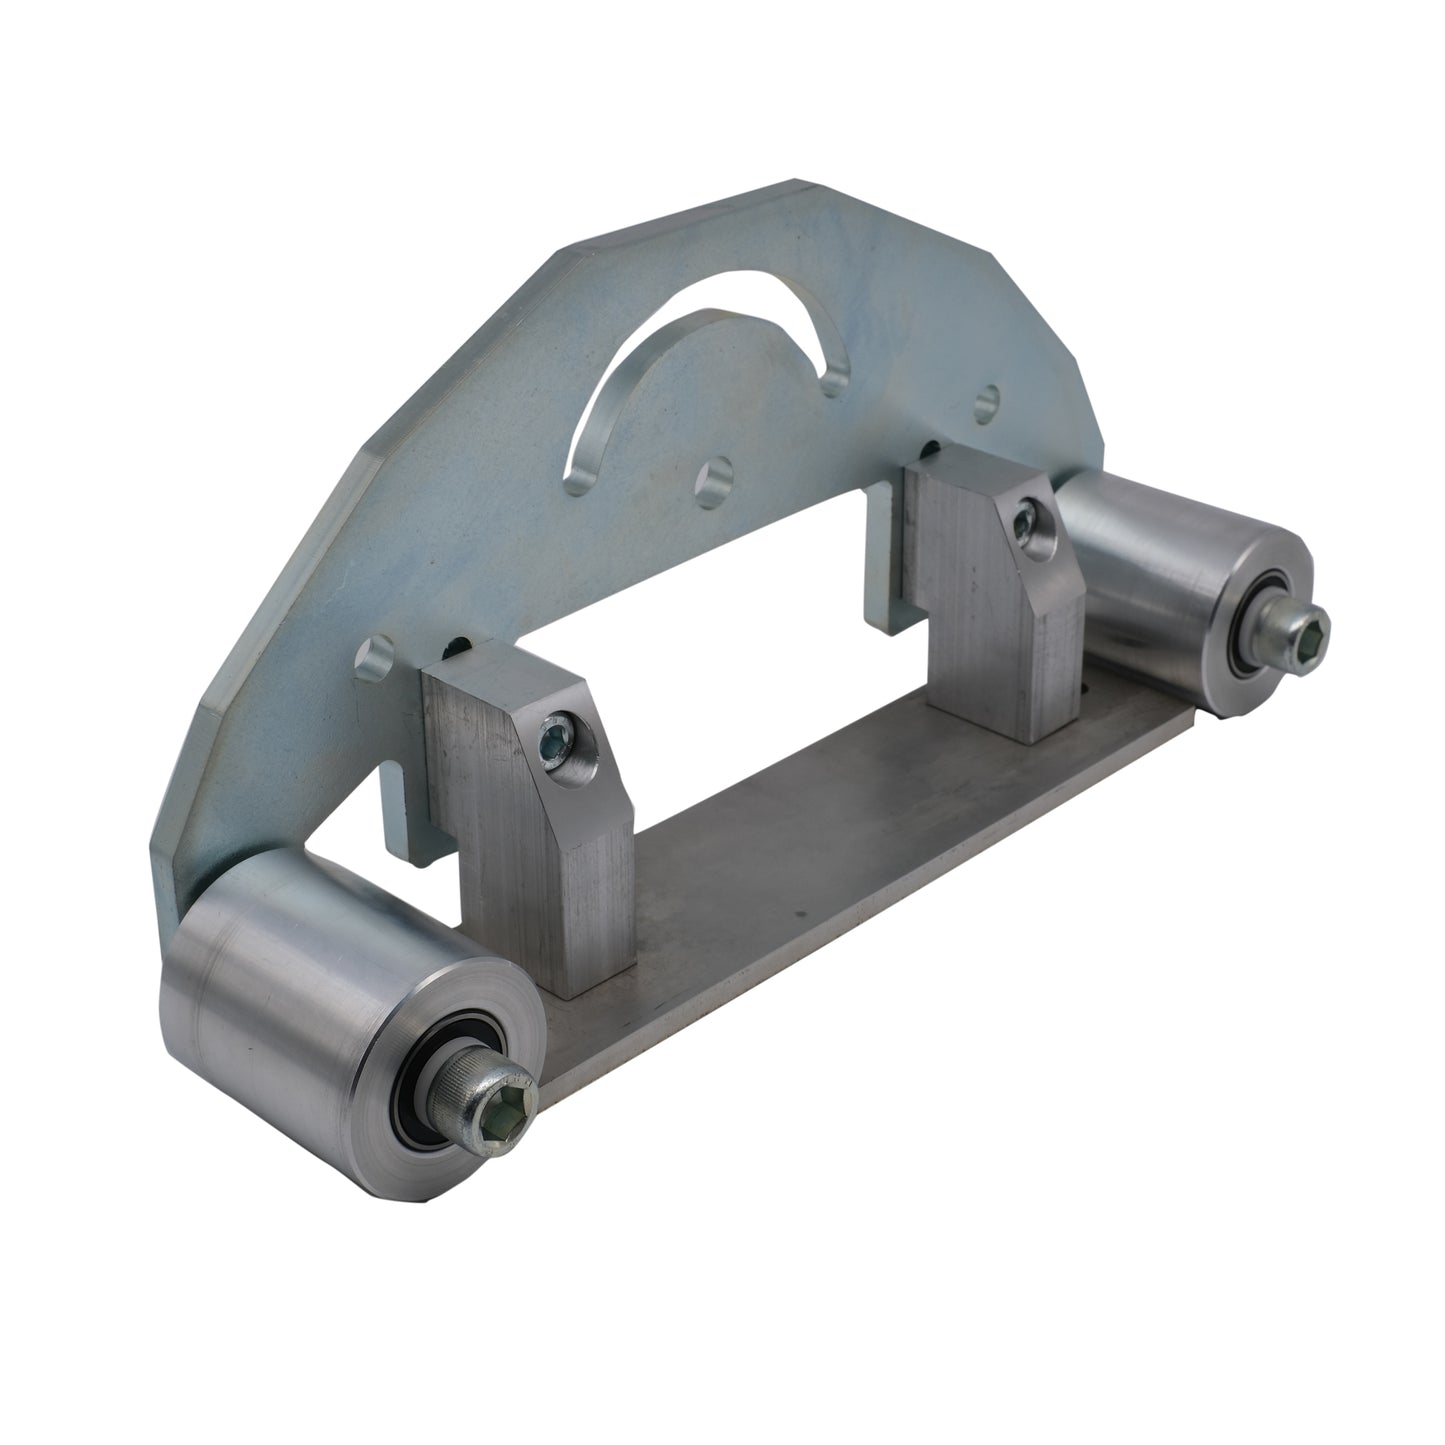 TR Maker Belt Grinder D-Backing plate for 2x72" 5" Drive 3"Tracking wheels kit